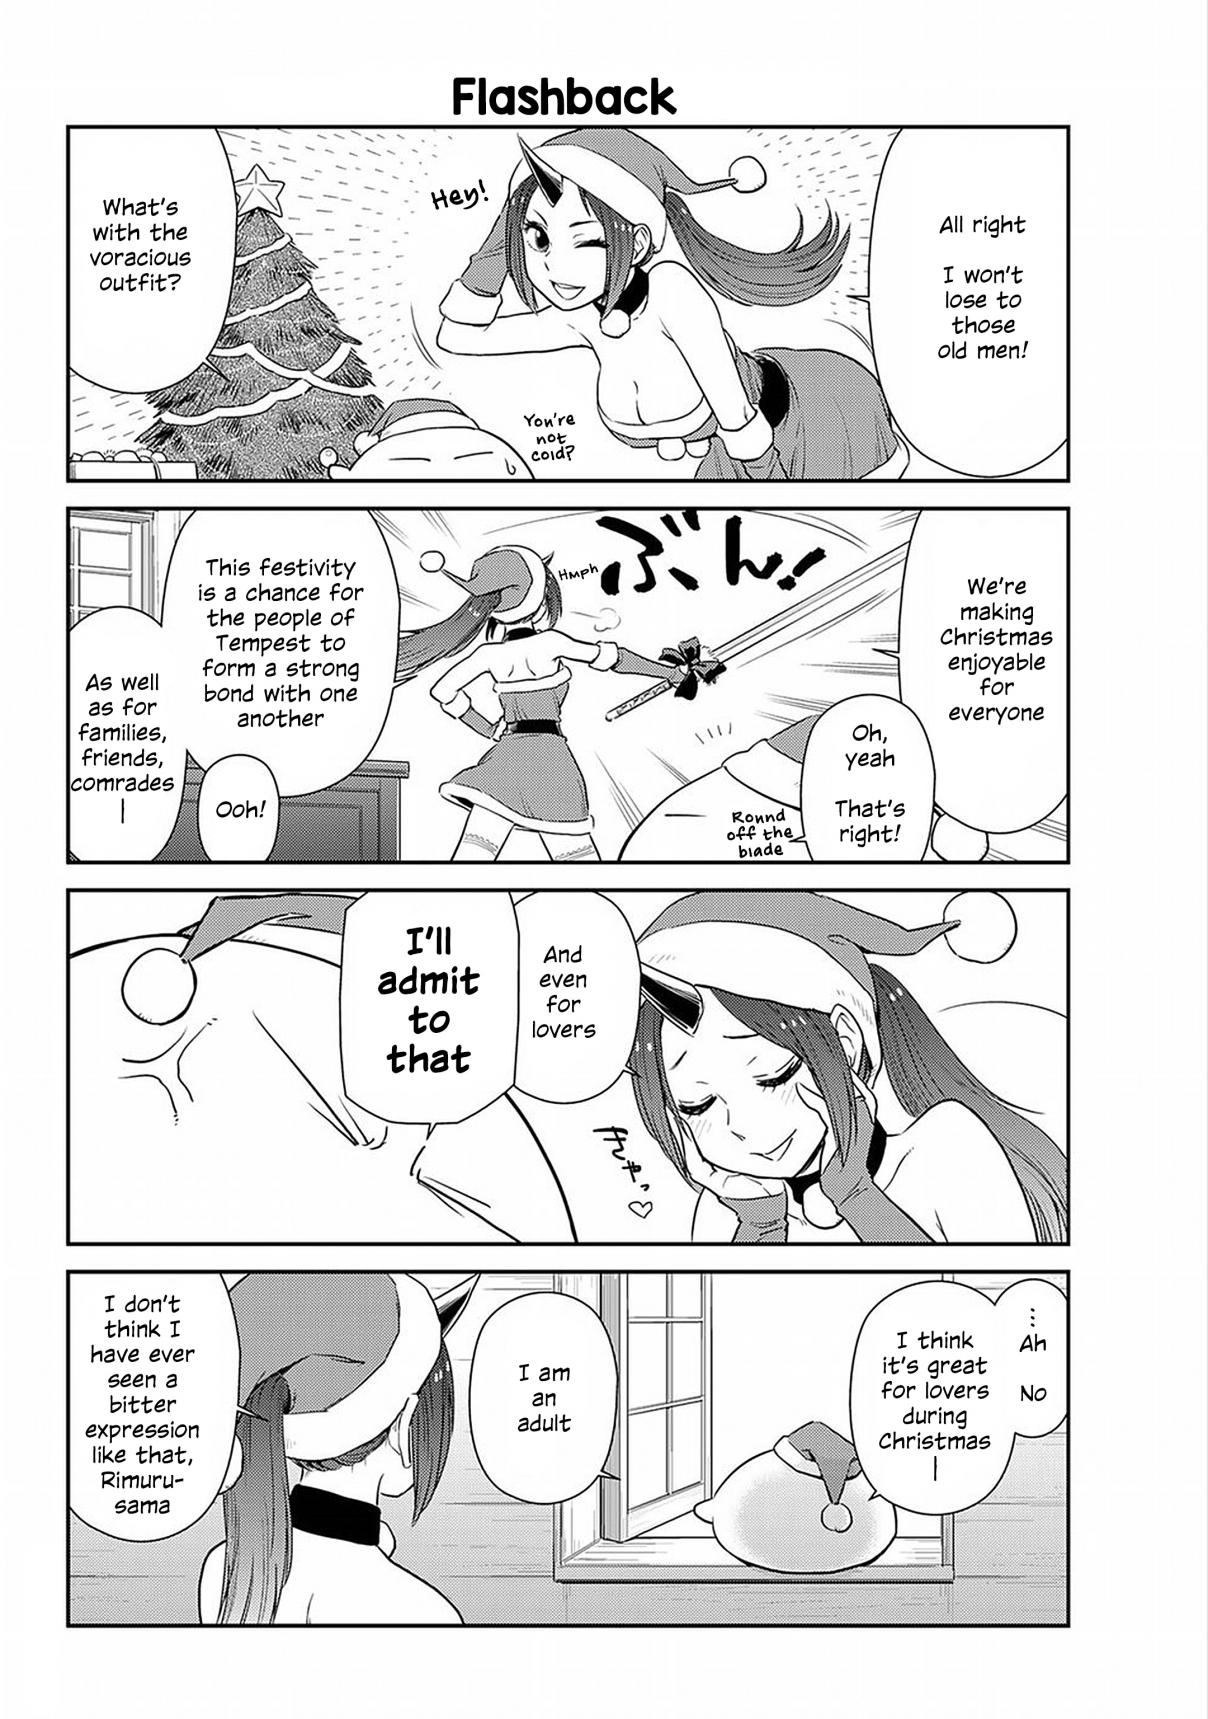 Tensura Nikki Tensei Shitara Slime Datta Ken Vol. 2 Ch. 12 「Where is Santa Claus?」